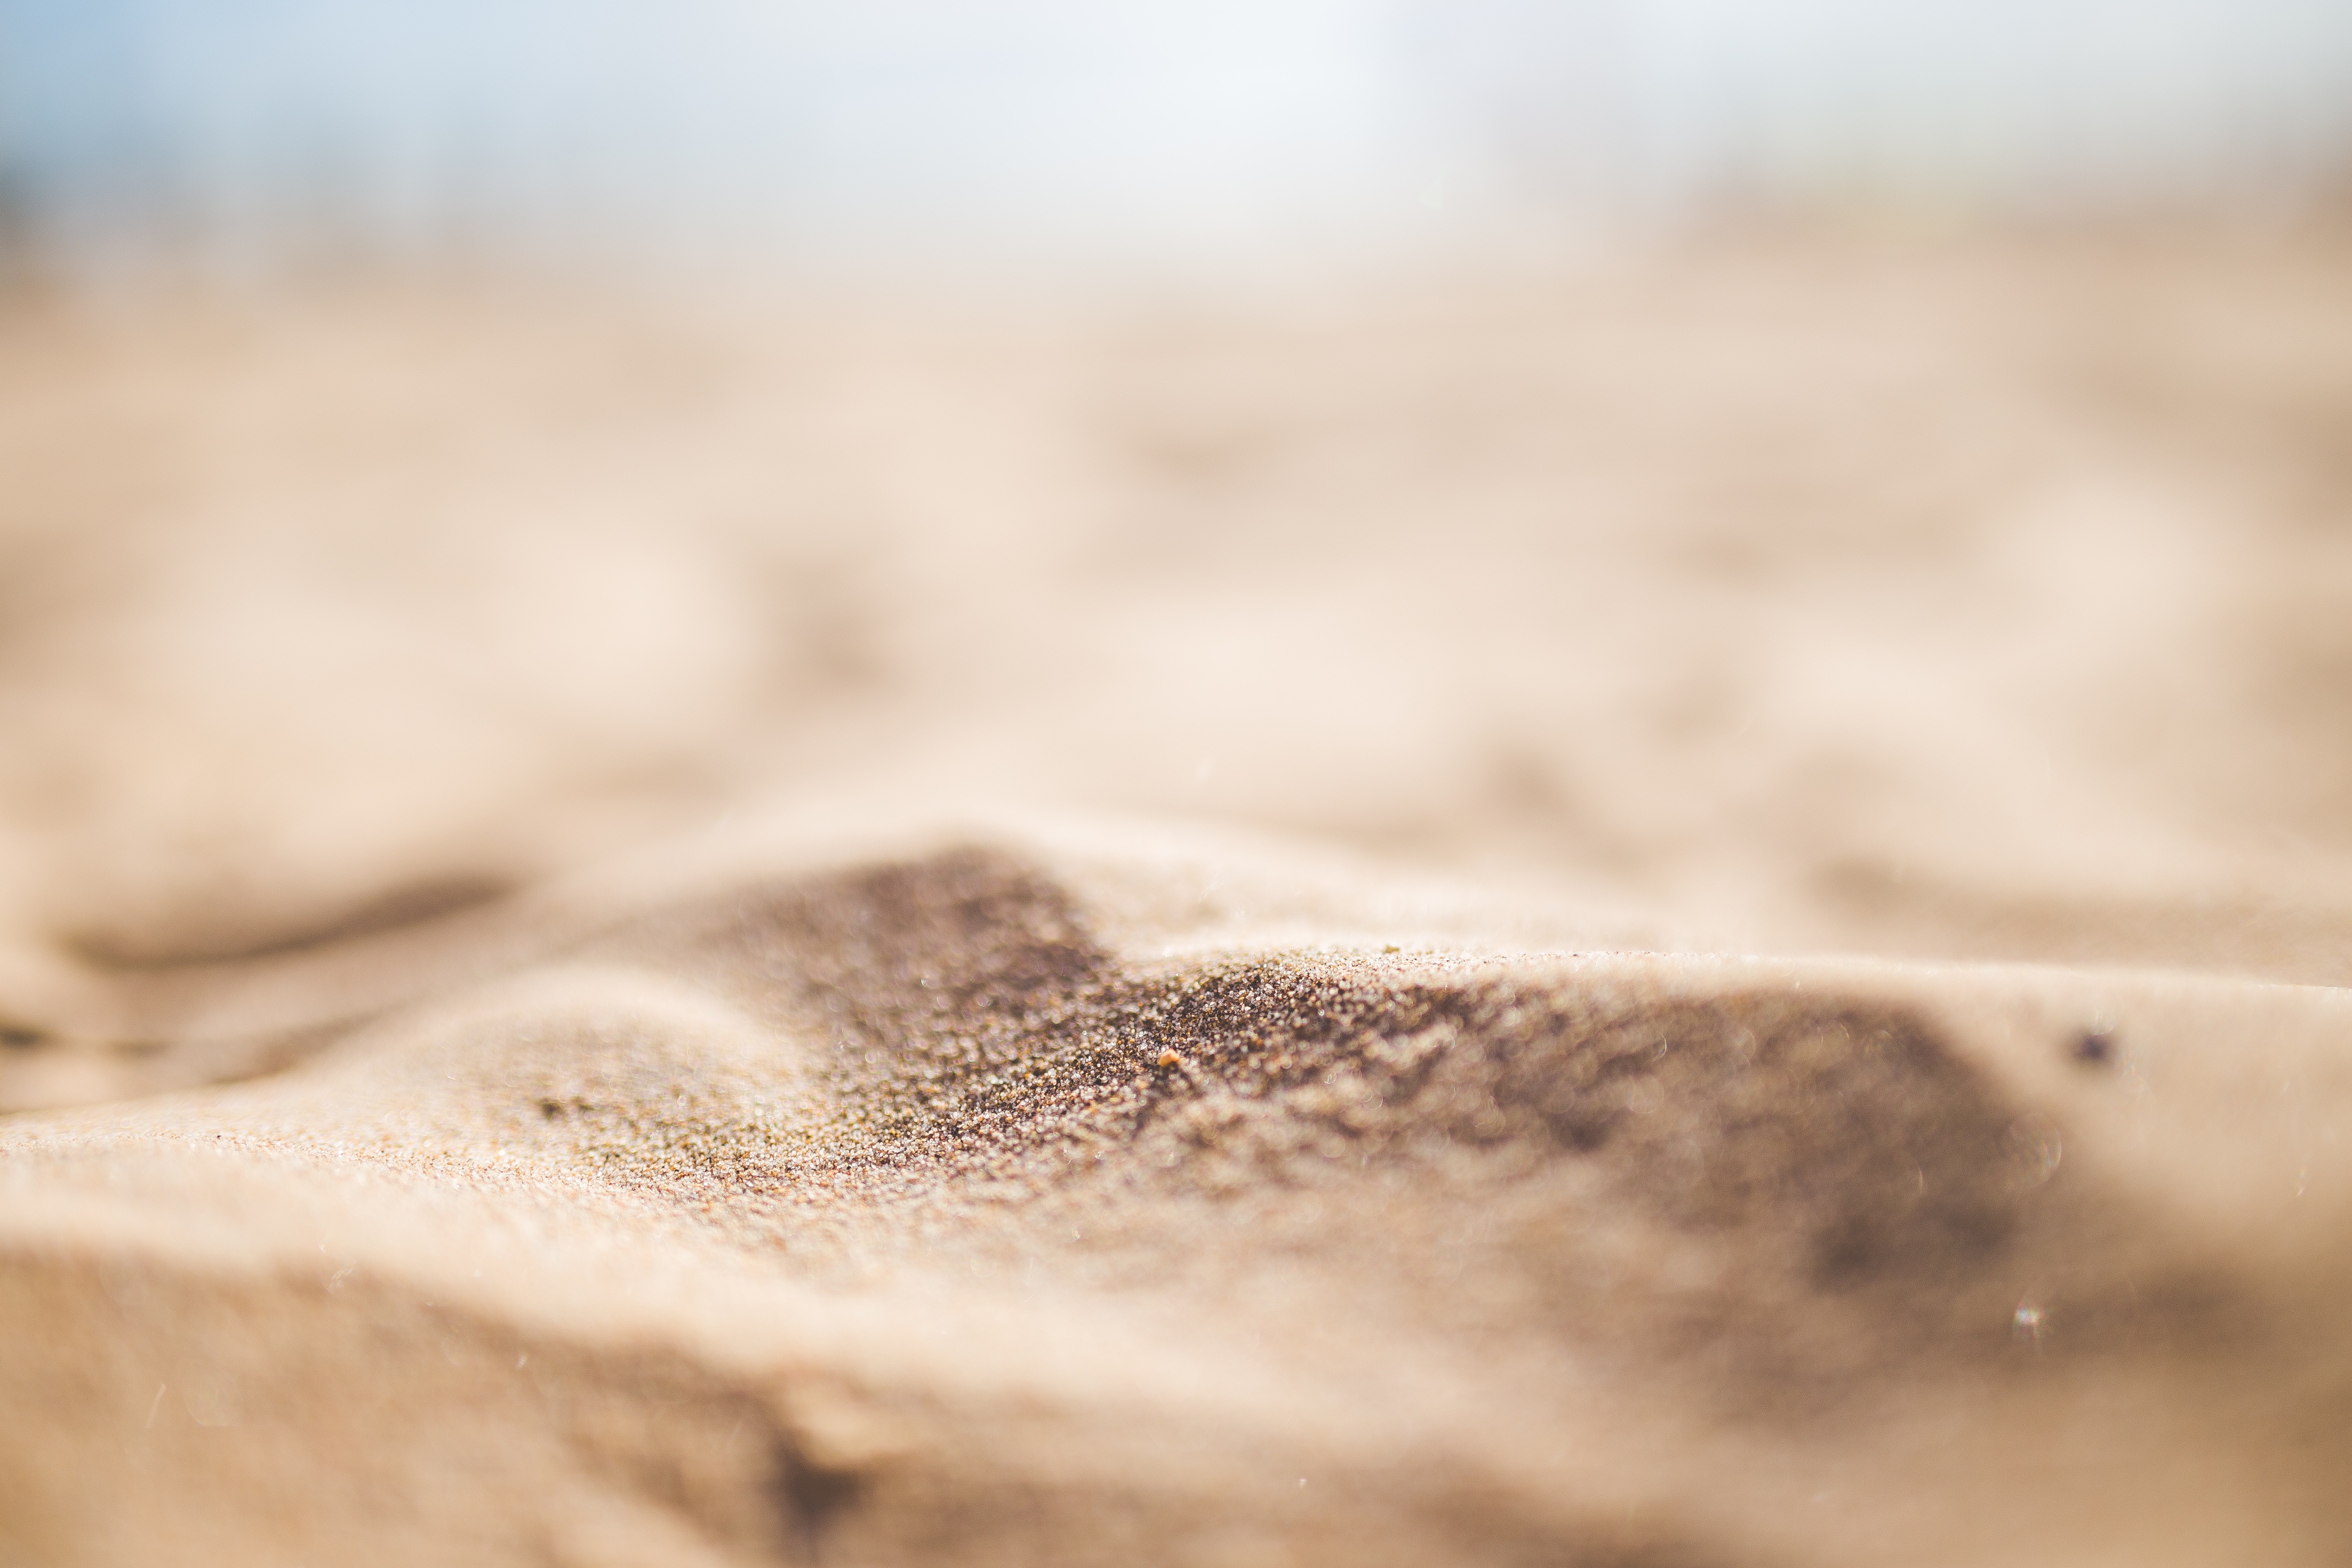 Sand texture photo